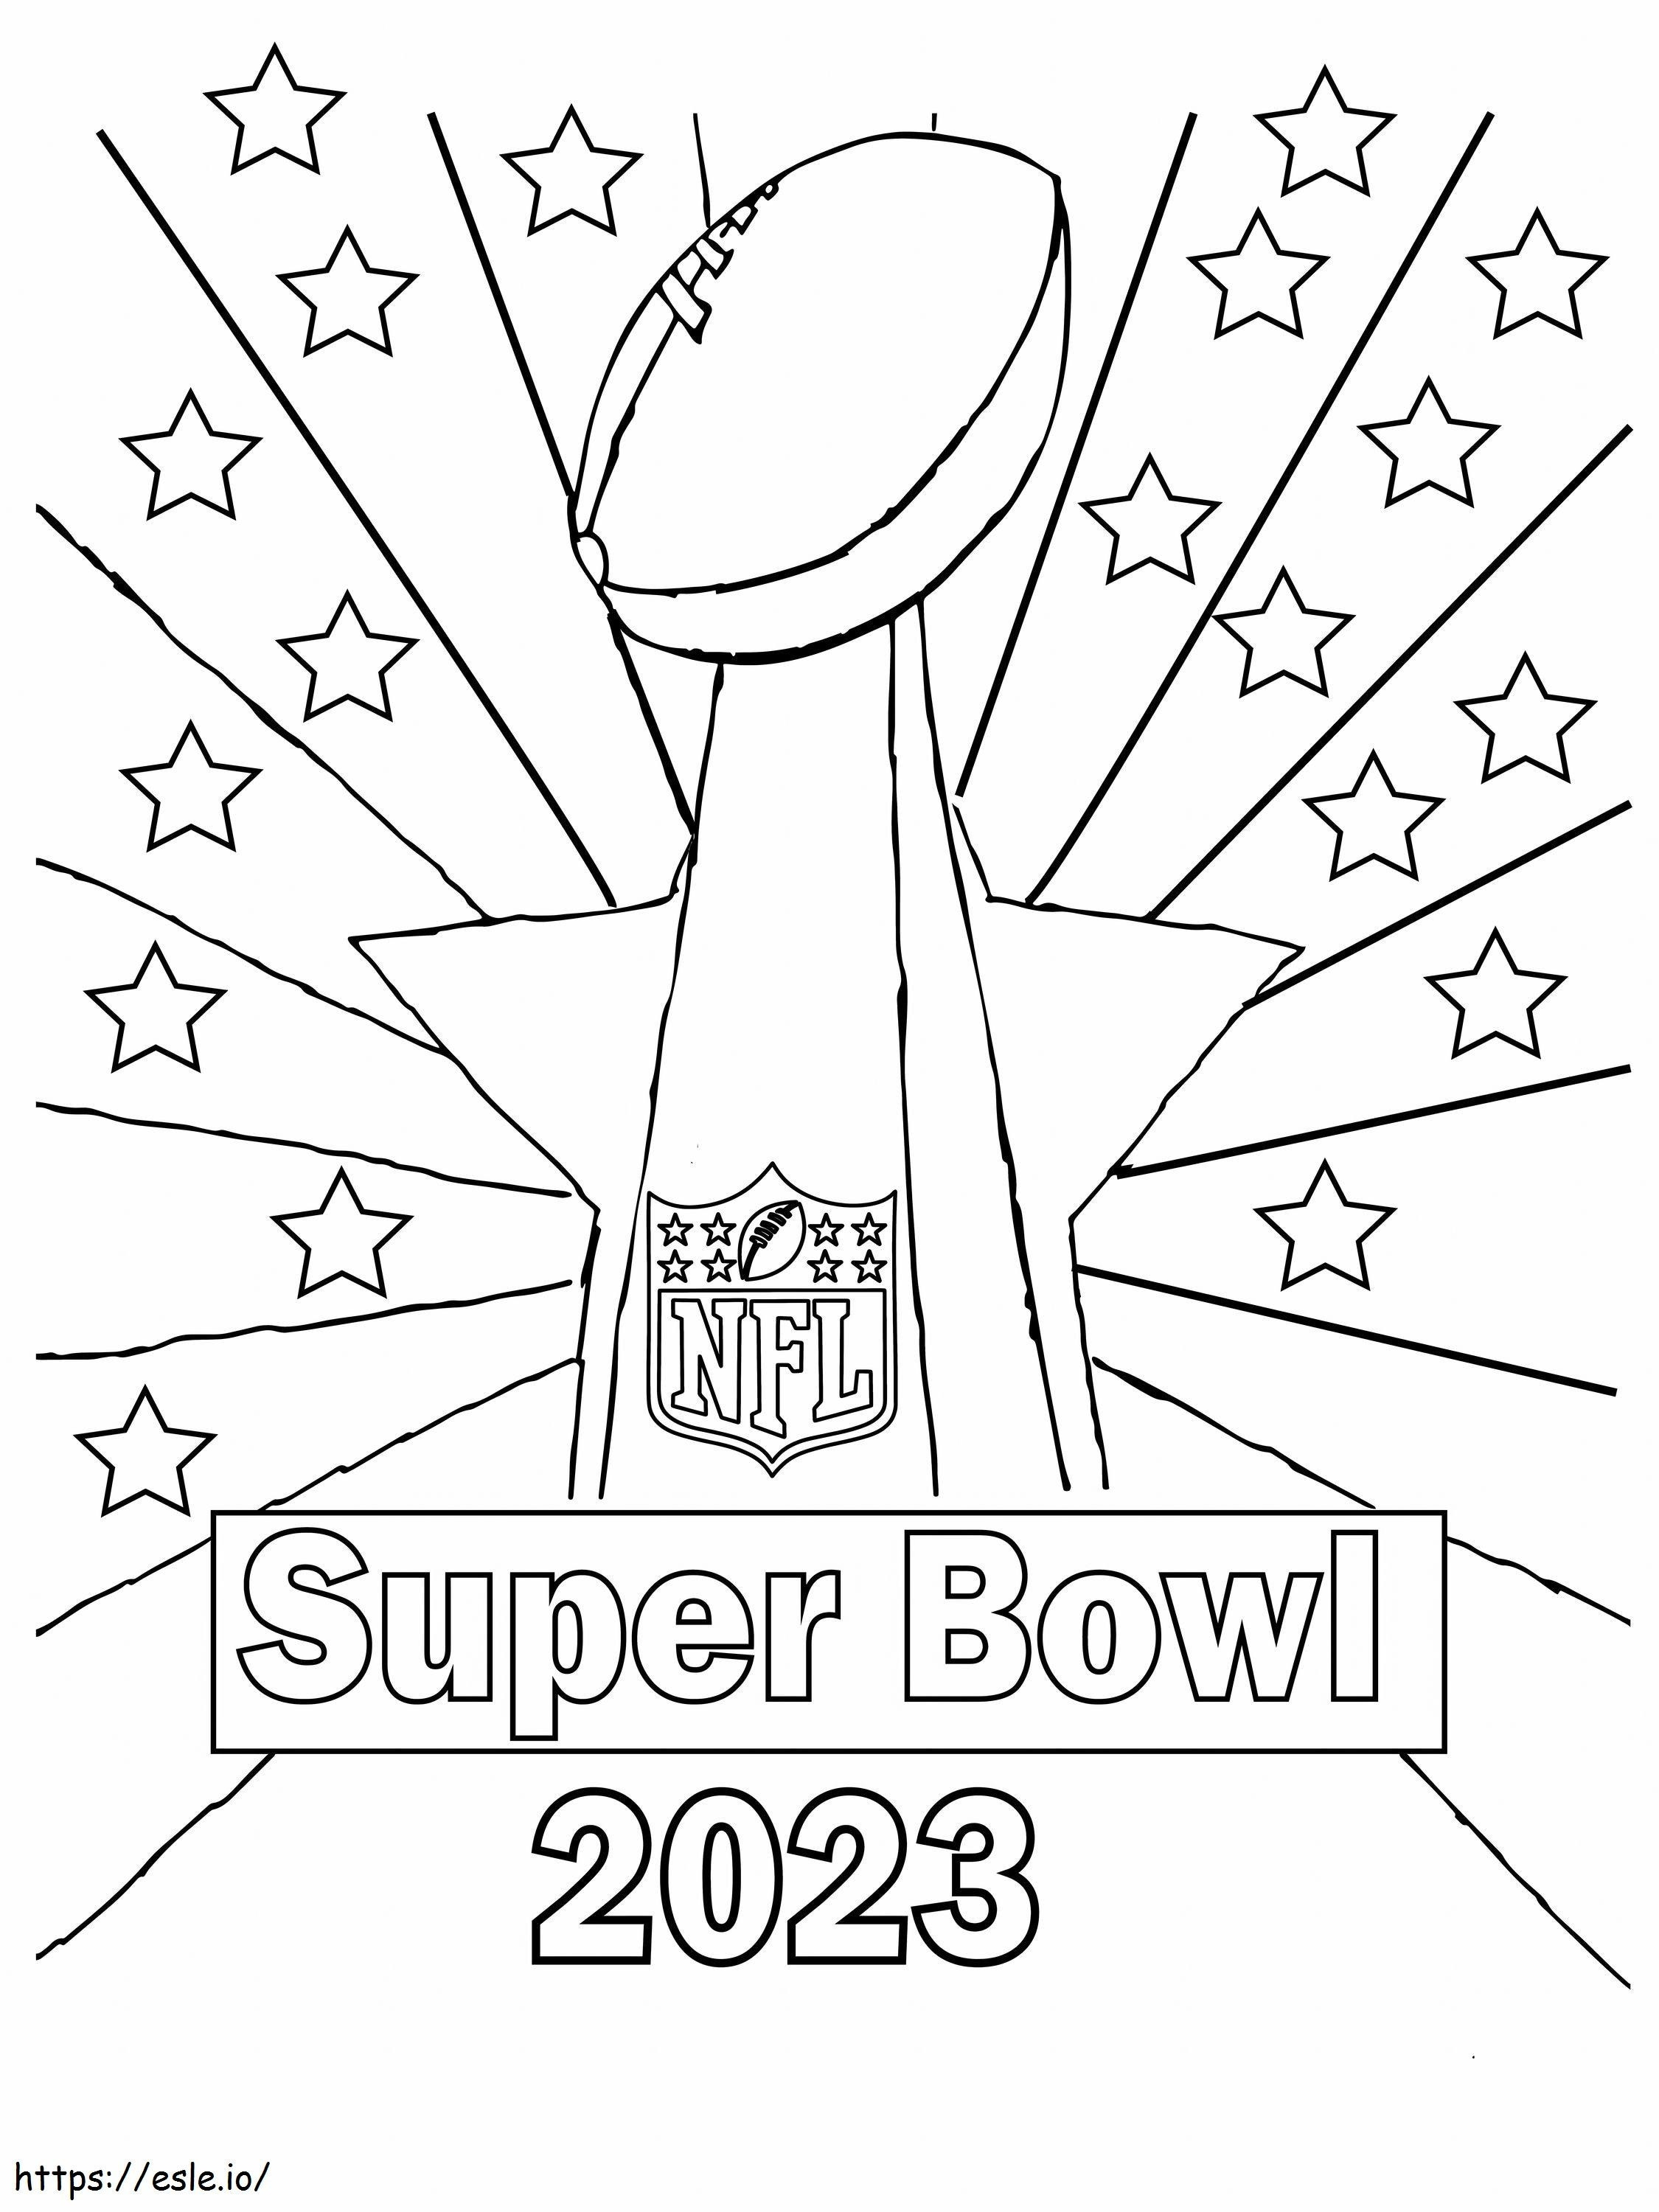 Superbowl 2023 2 kleurplaat kleurplaat